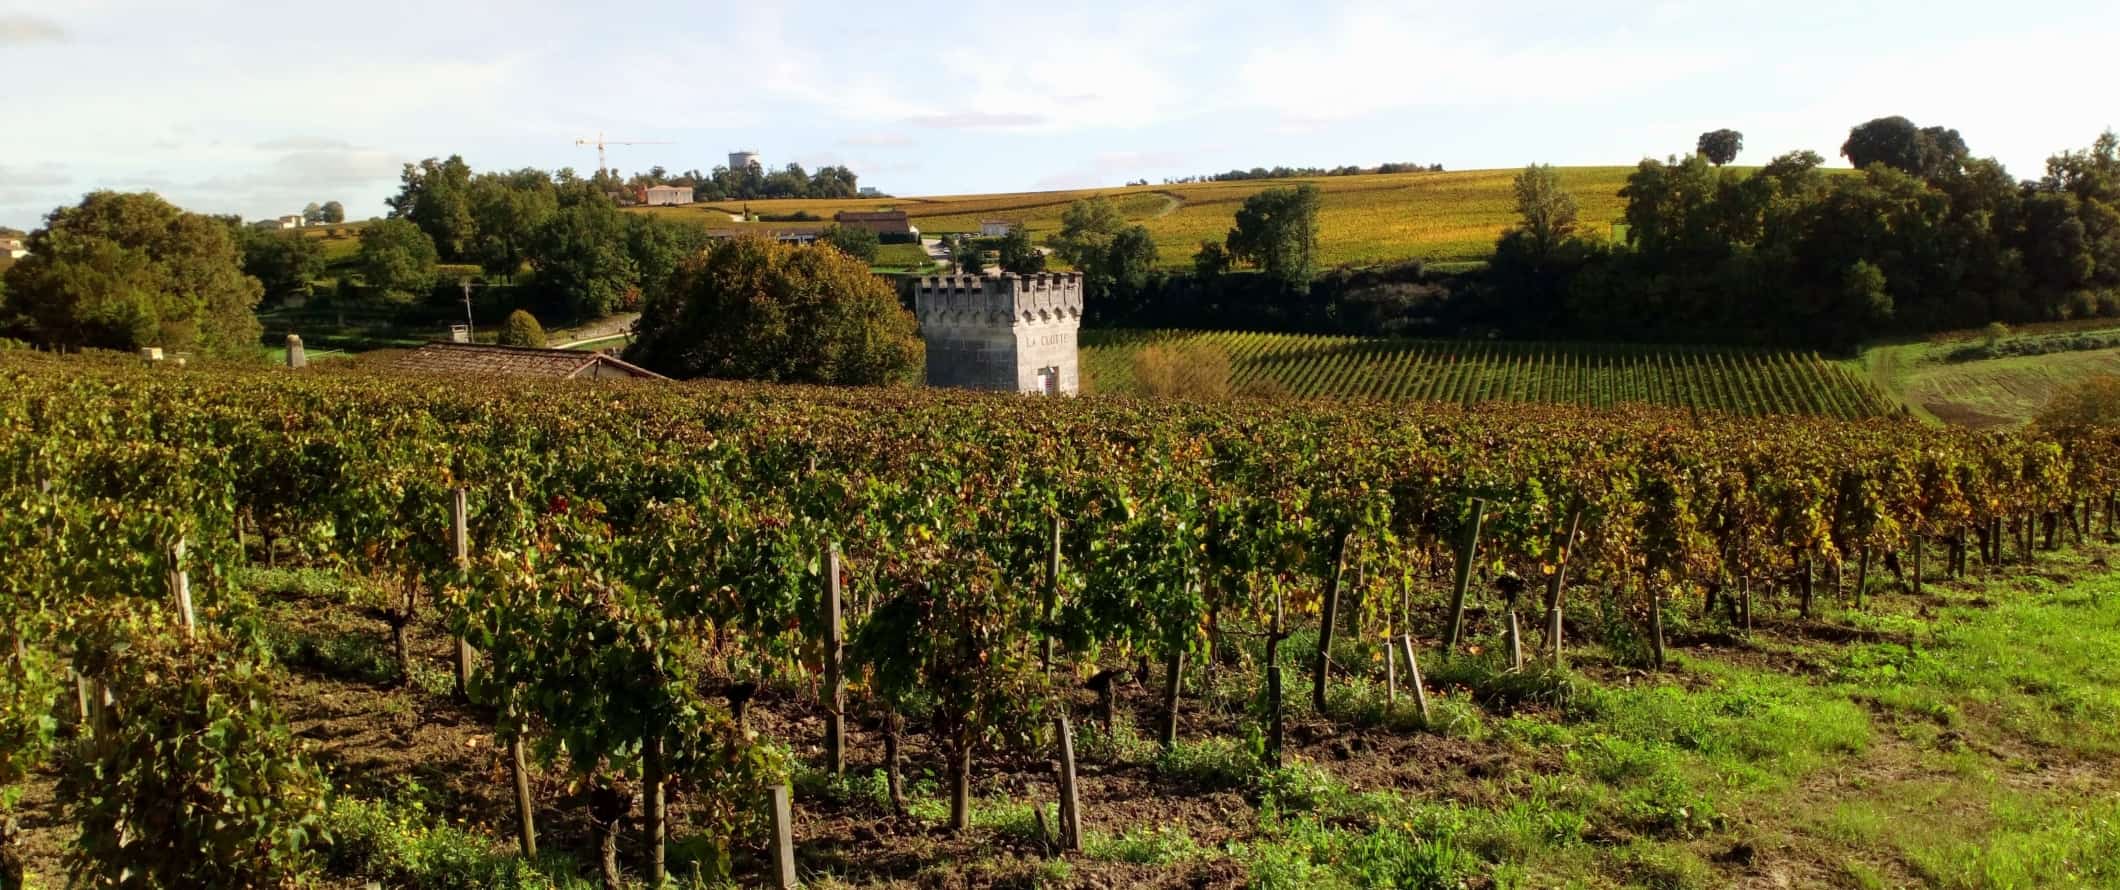 法国圣埃米利永的葡萄园、历史悠久的小城堡塔楼和连绵起伏的丘陵